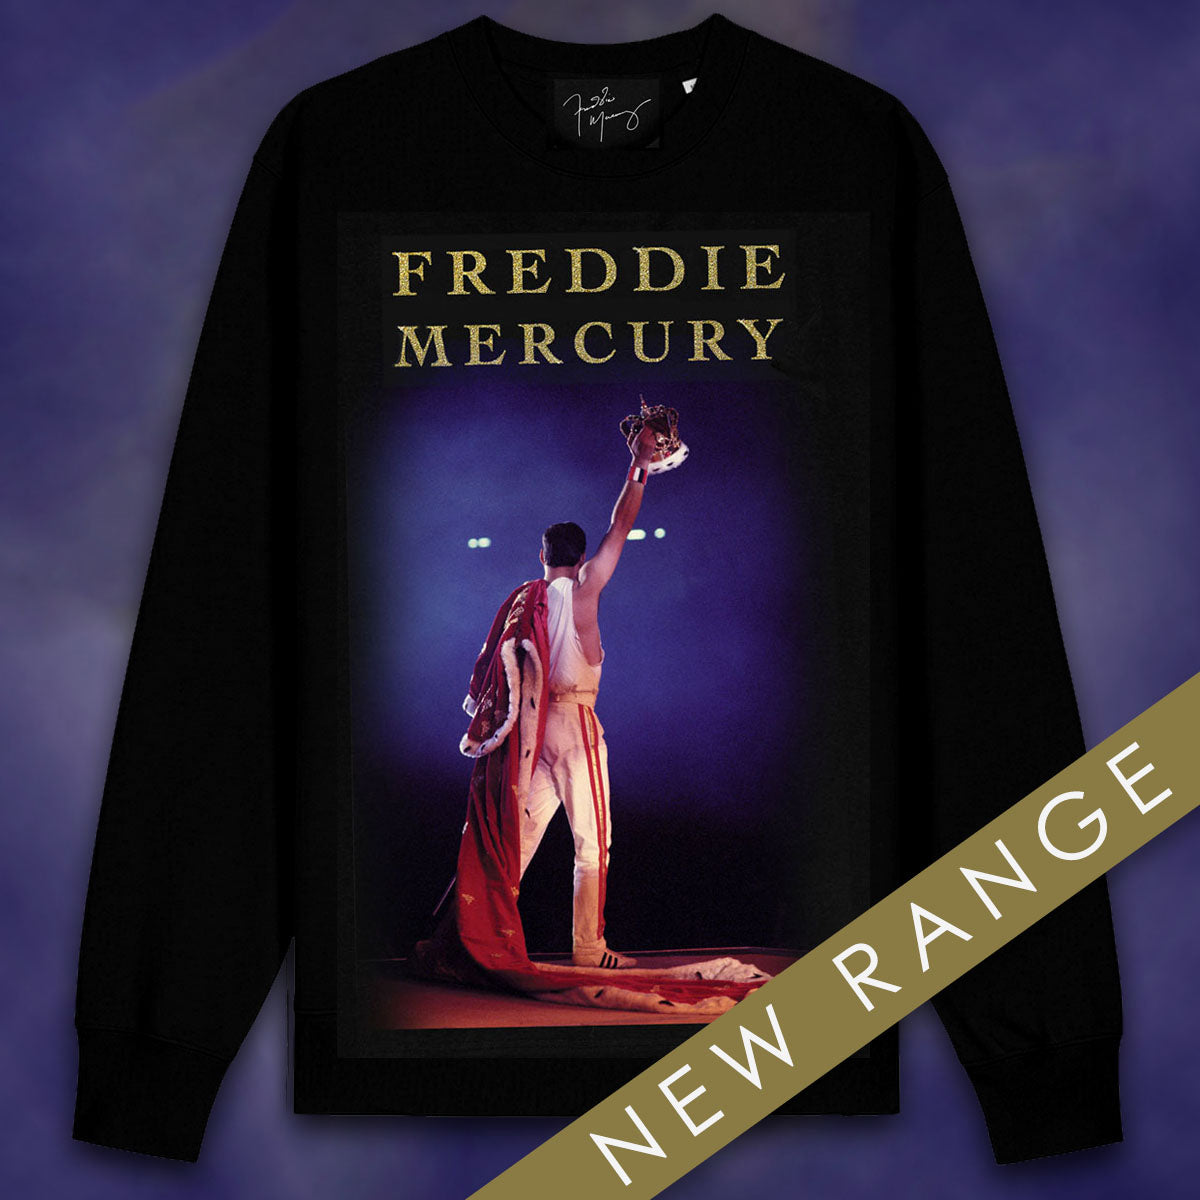 Freddie Mercury - Freddie Wembley Raised Crown Sweatshirt